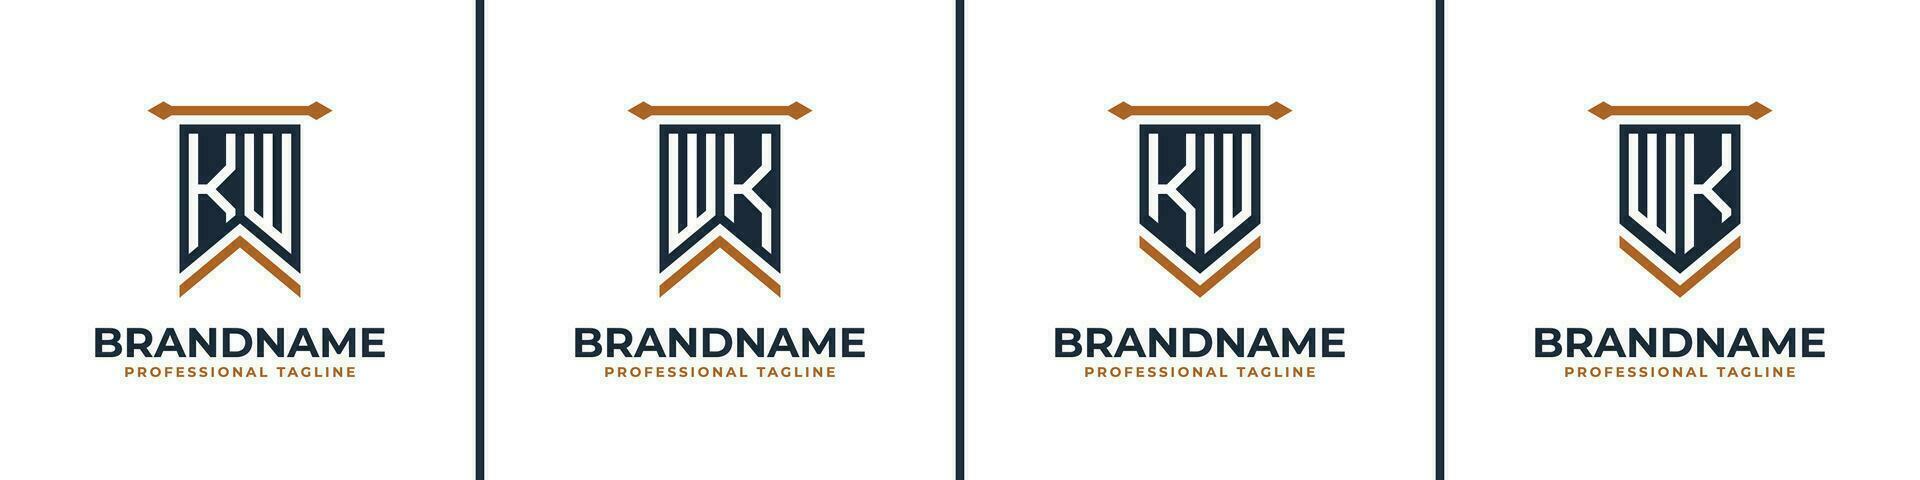 brev kw och wk vimpel flagga logotyp uppsättning, representera seger. lämplig för några företag med kw eller wk initialer. vektor